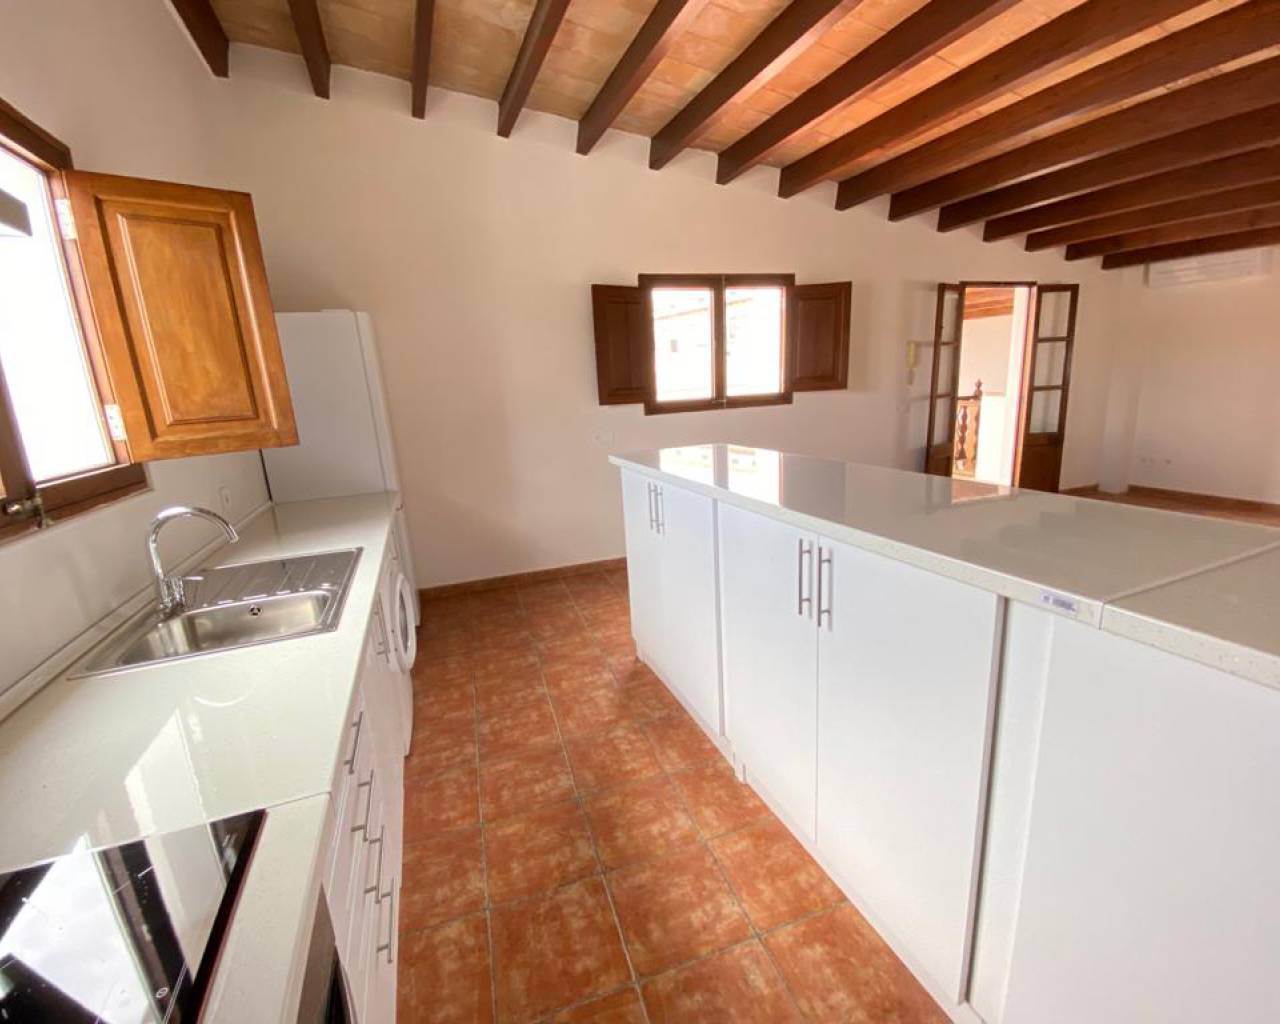 Pent for rent in Palma de Mallorca- Estate agents in Mallorca